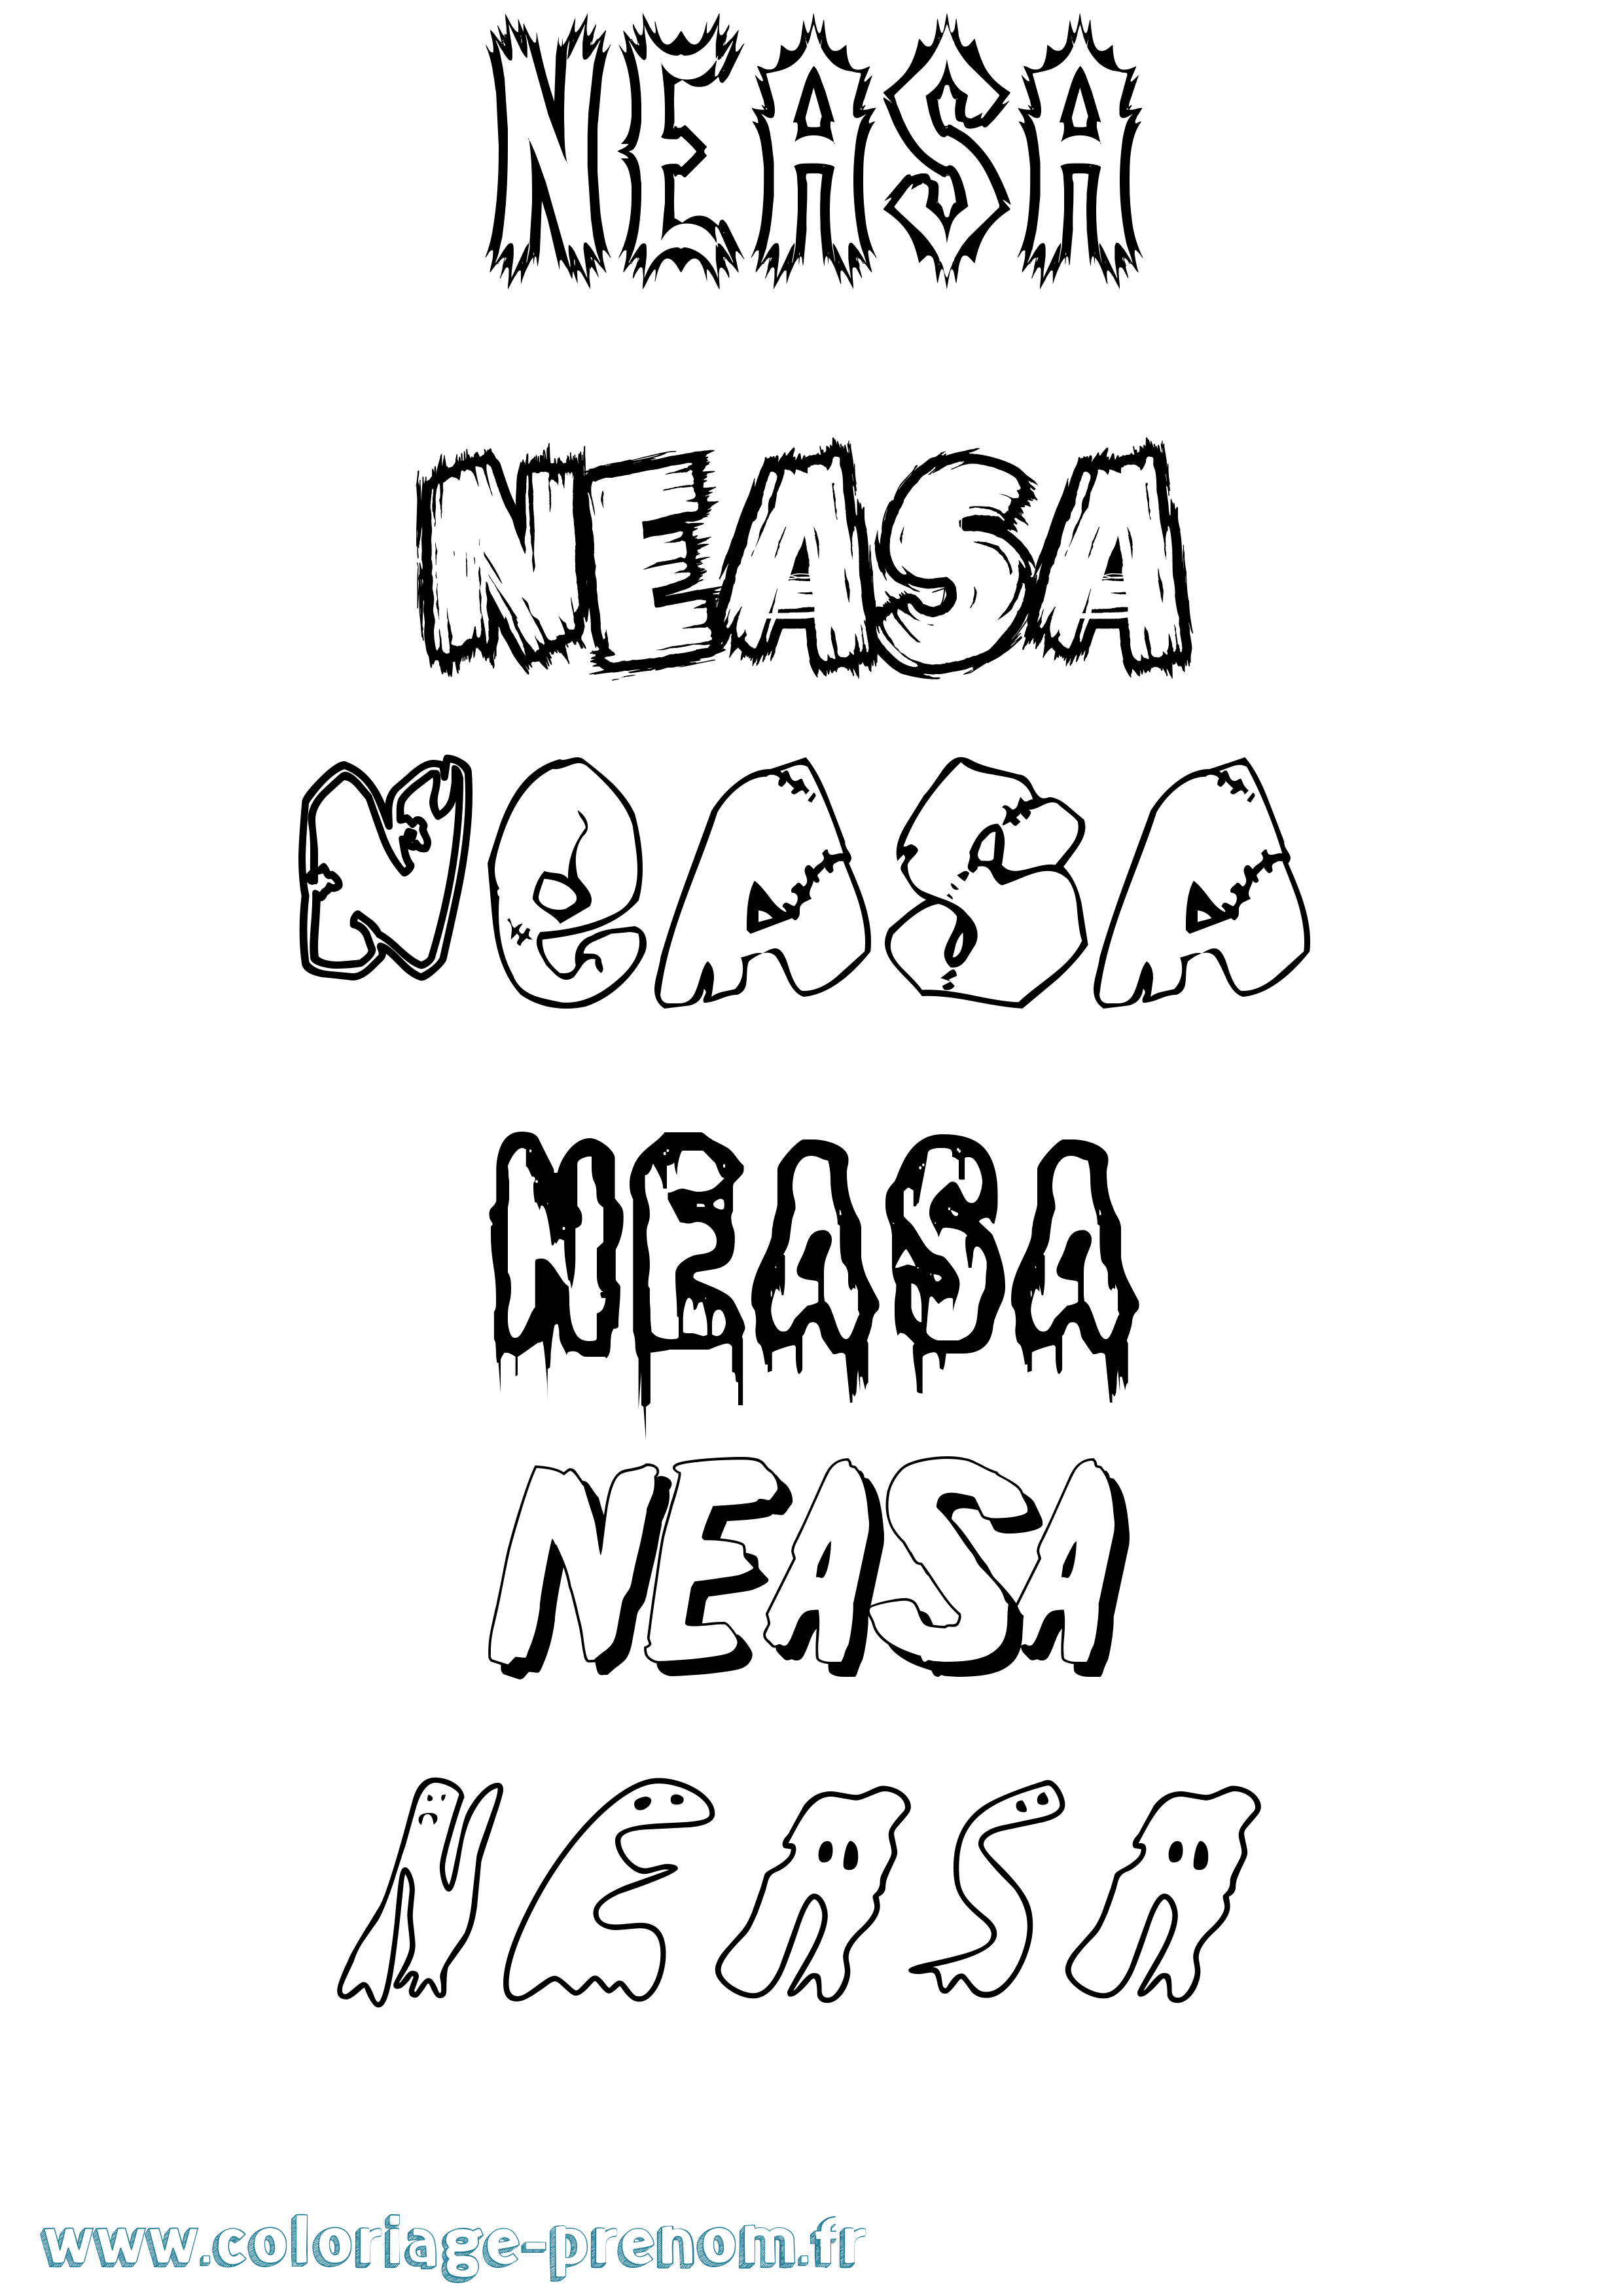 Coloriage prénom Neasa Frisson